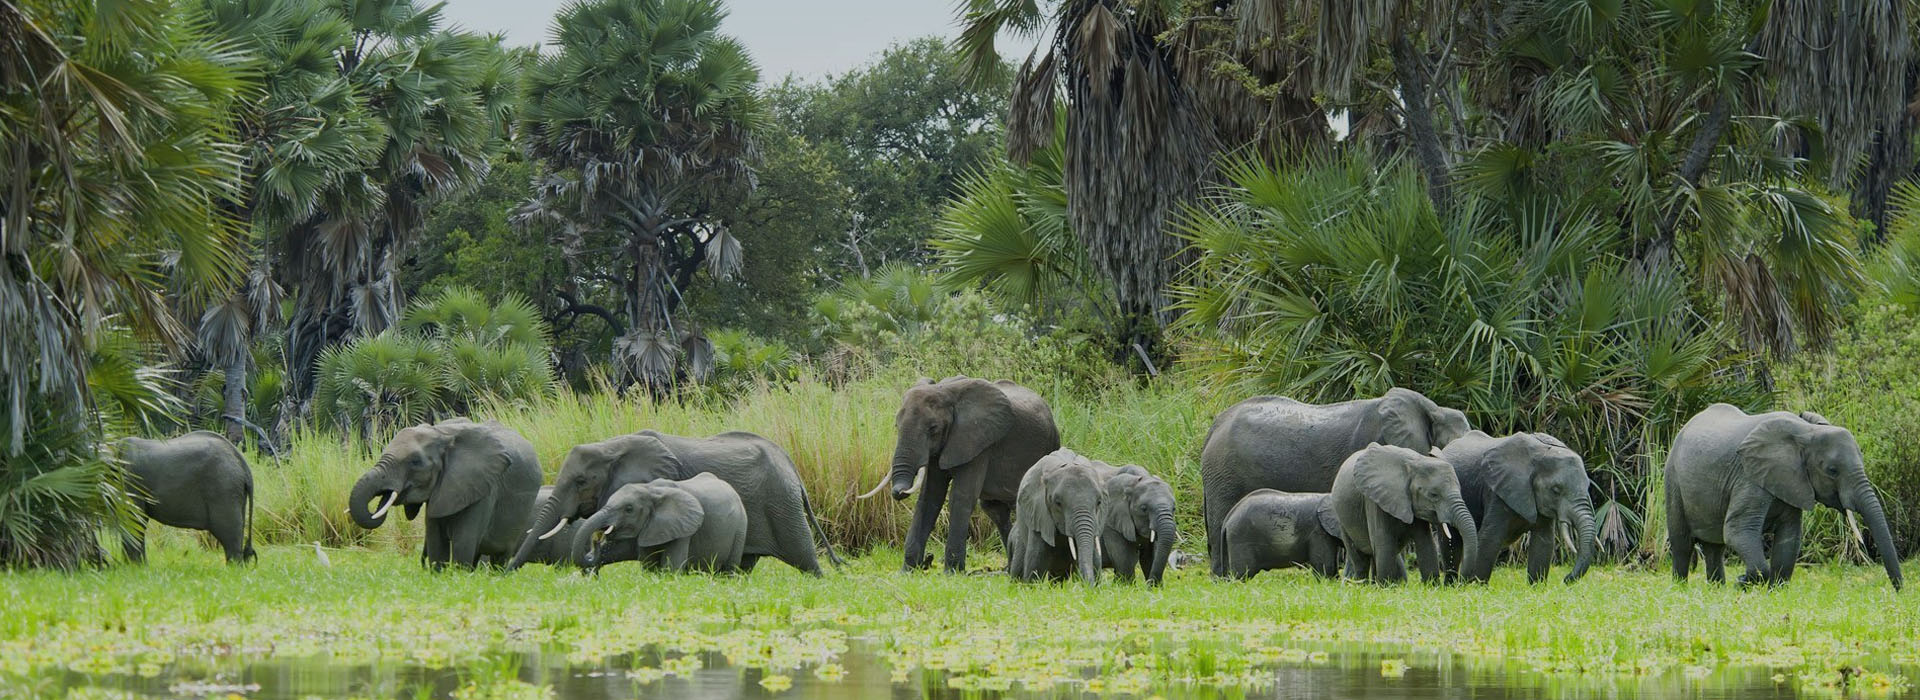 Day Trip Safari Tanzania